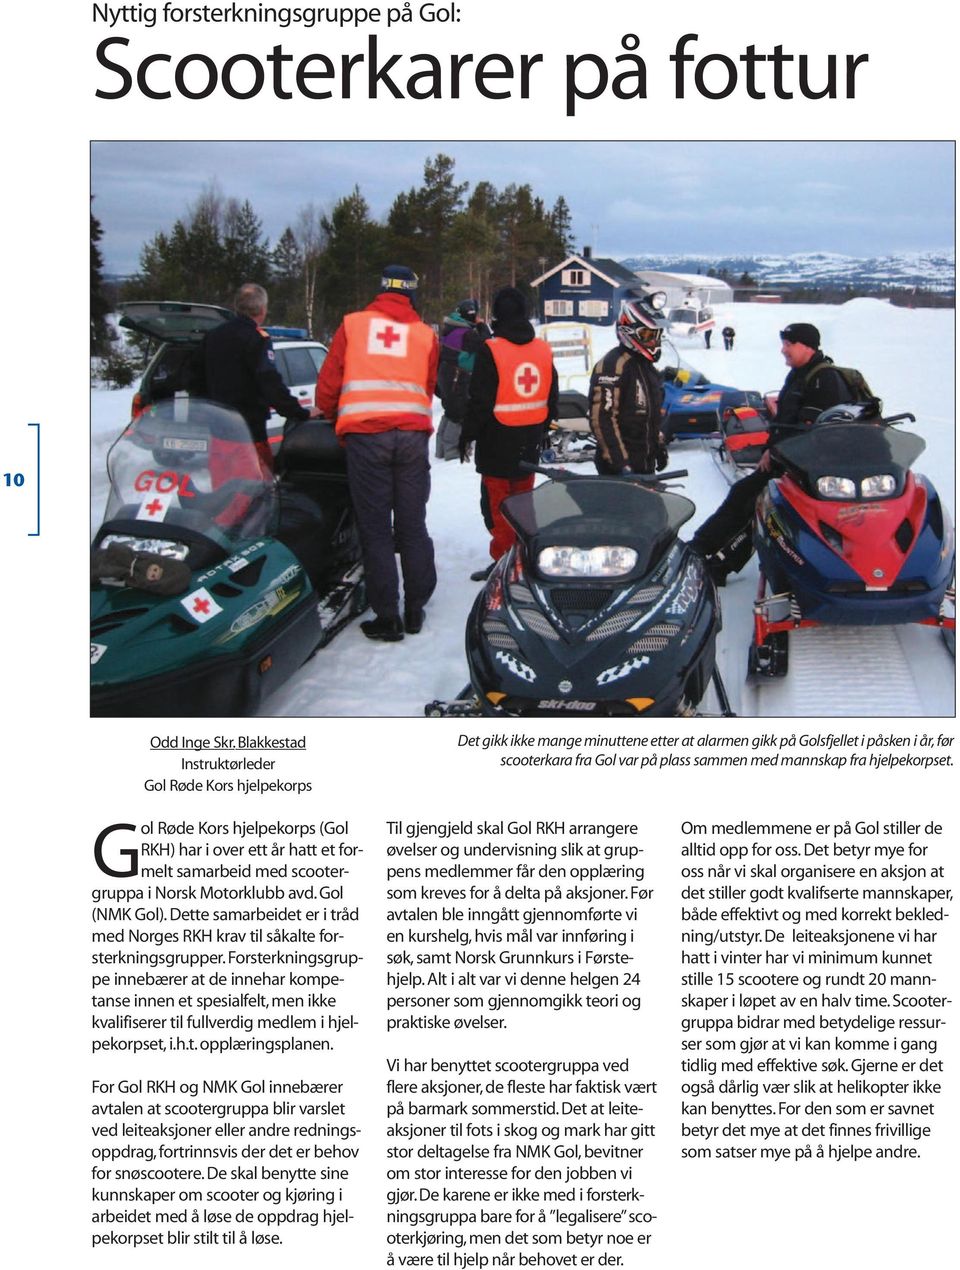 hjelpekorpset. Gol Røde Kors hjelpekorps (Gol RKH) har i over ett år hatt et formelt samarbeid med scootergruppa i Norsk Motorklubb avd. Gol (NMK Gol).